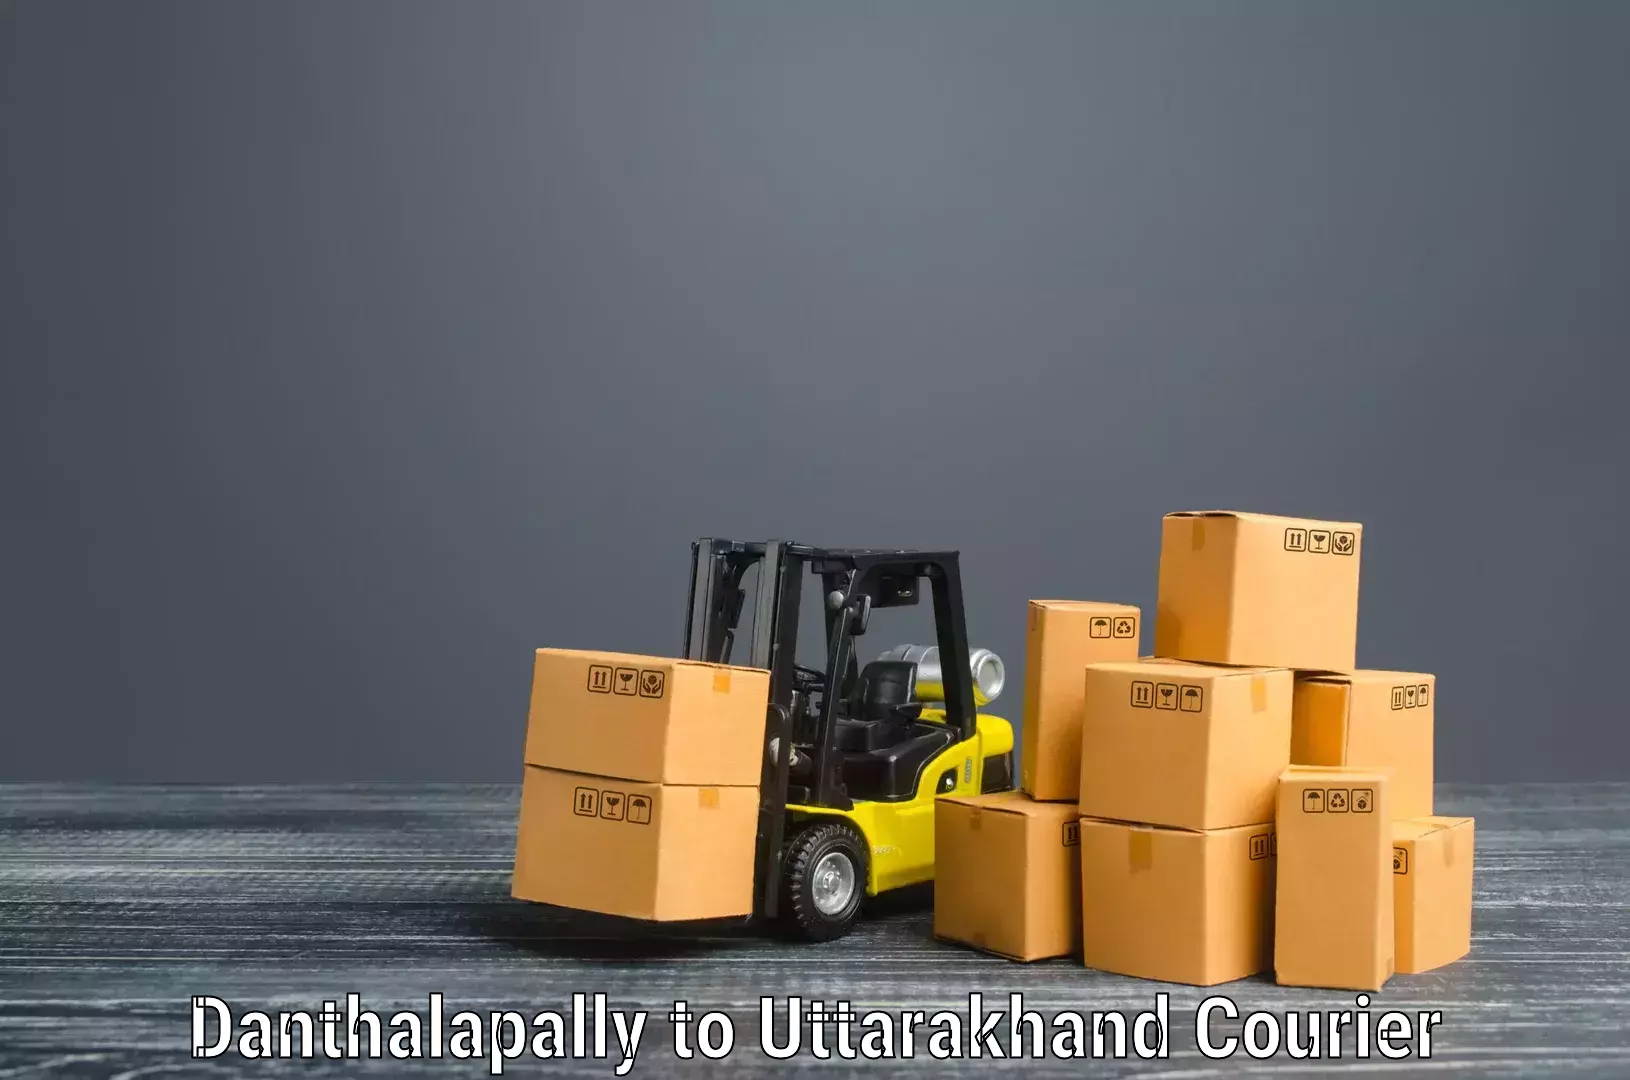 Stress-free household moving Danthalapally to Uttarakhand